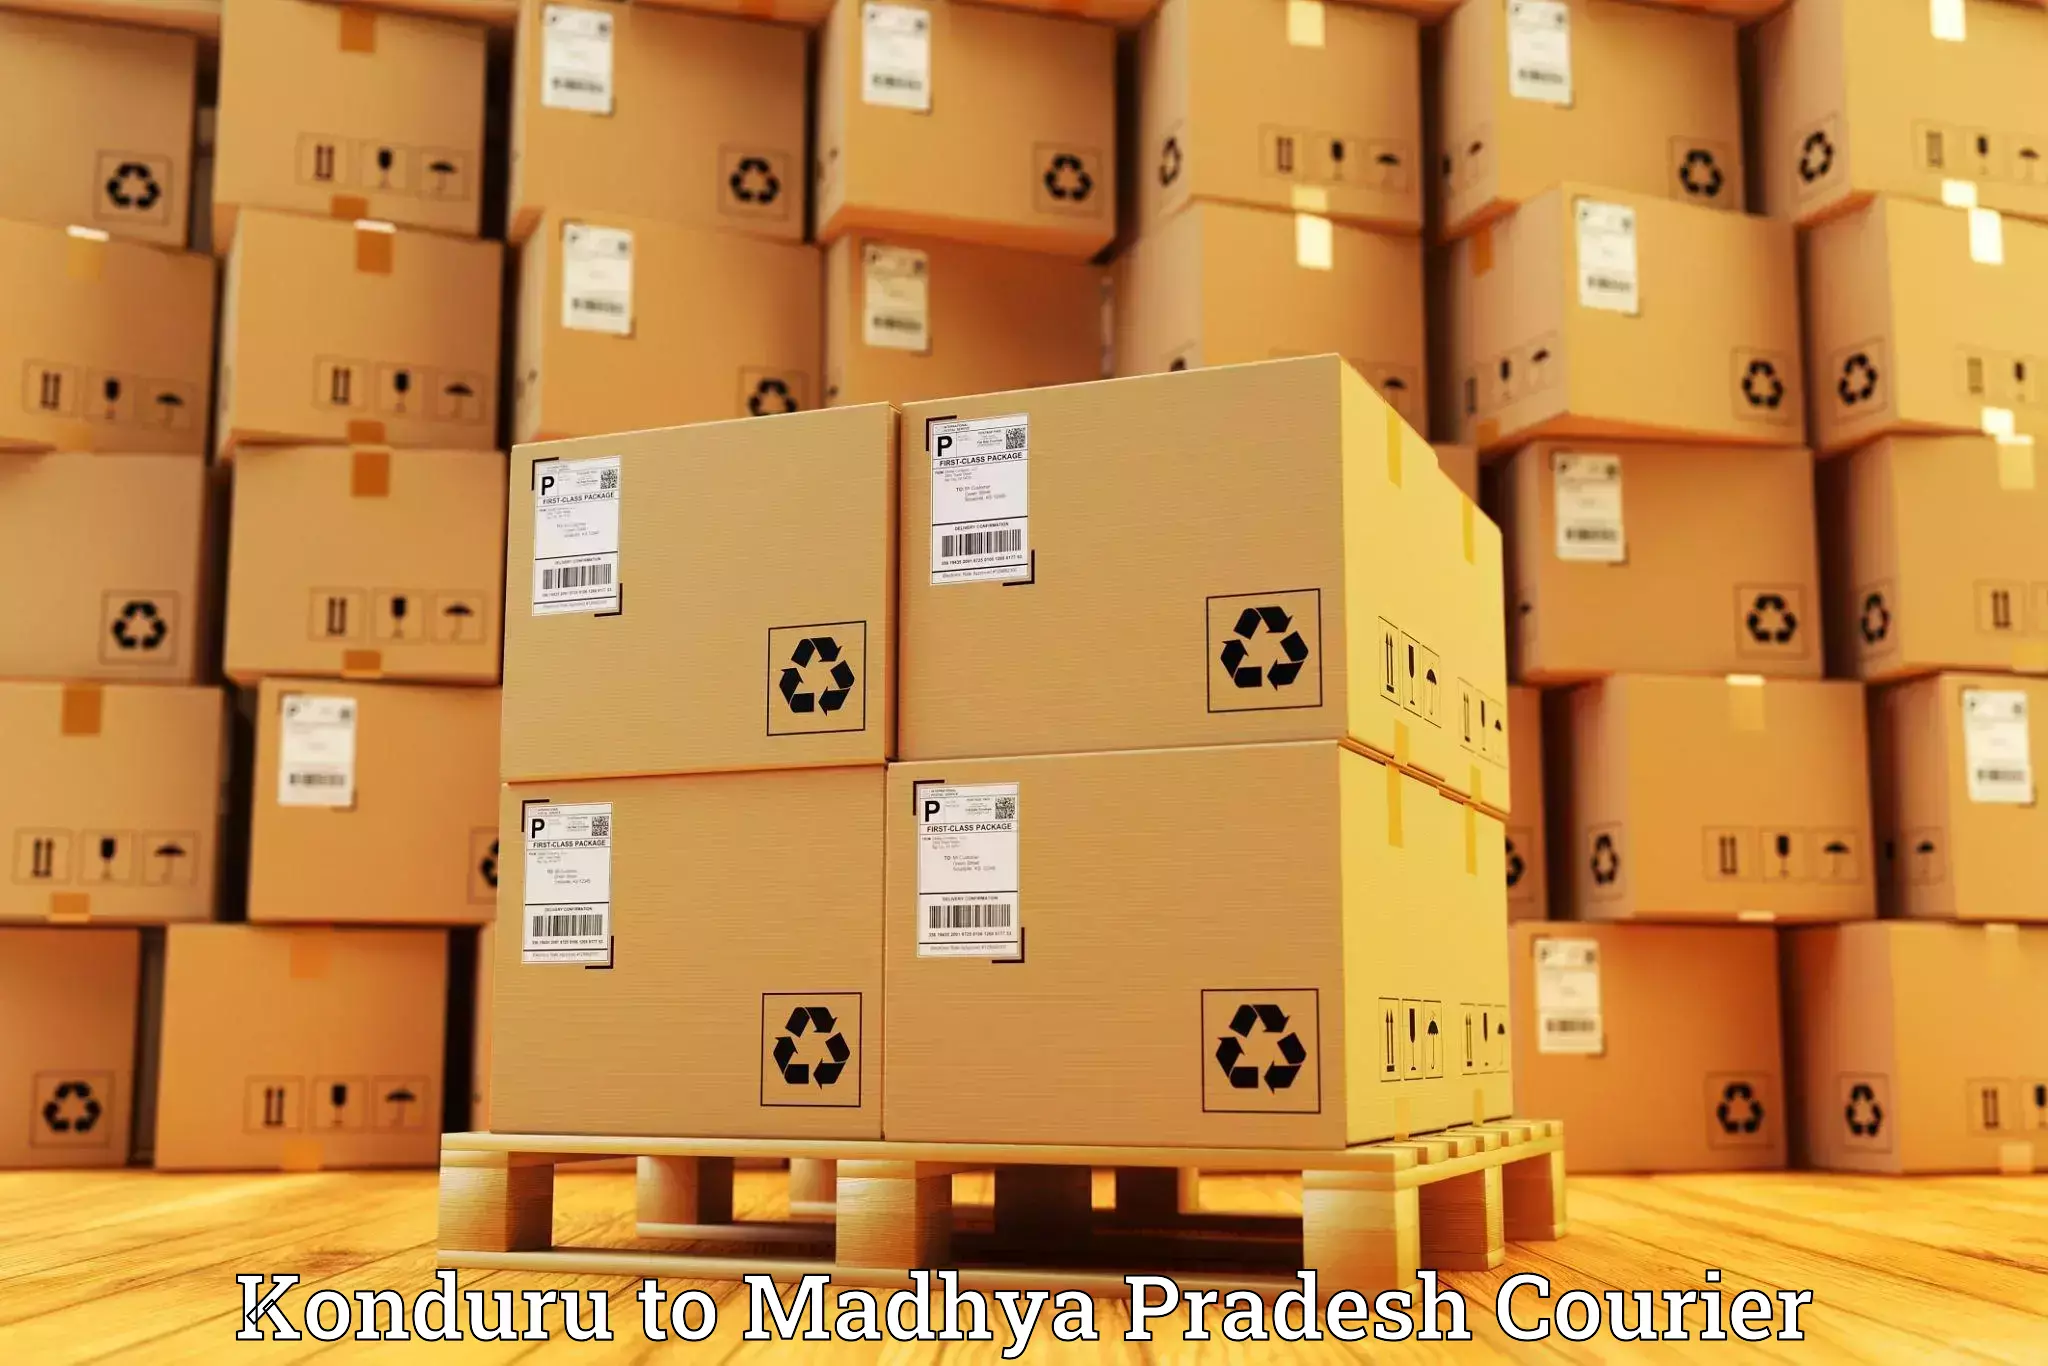 Express mail solutions Konduru to Petlawad